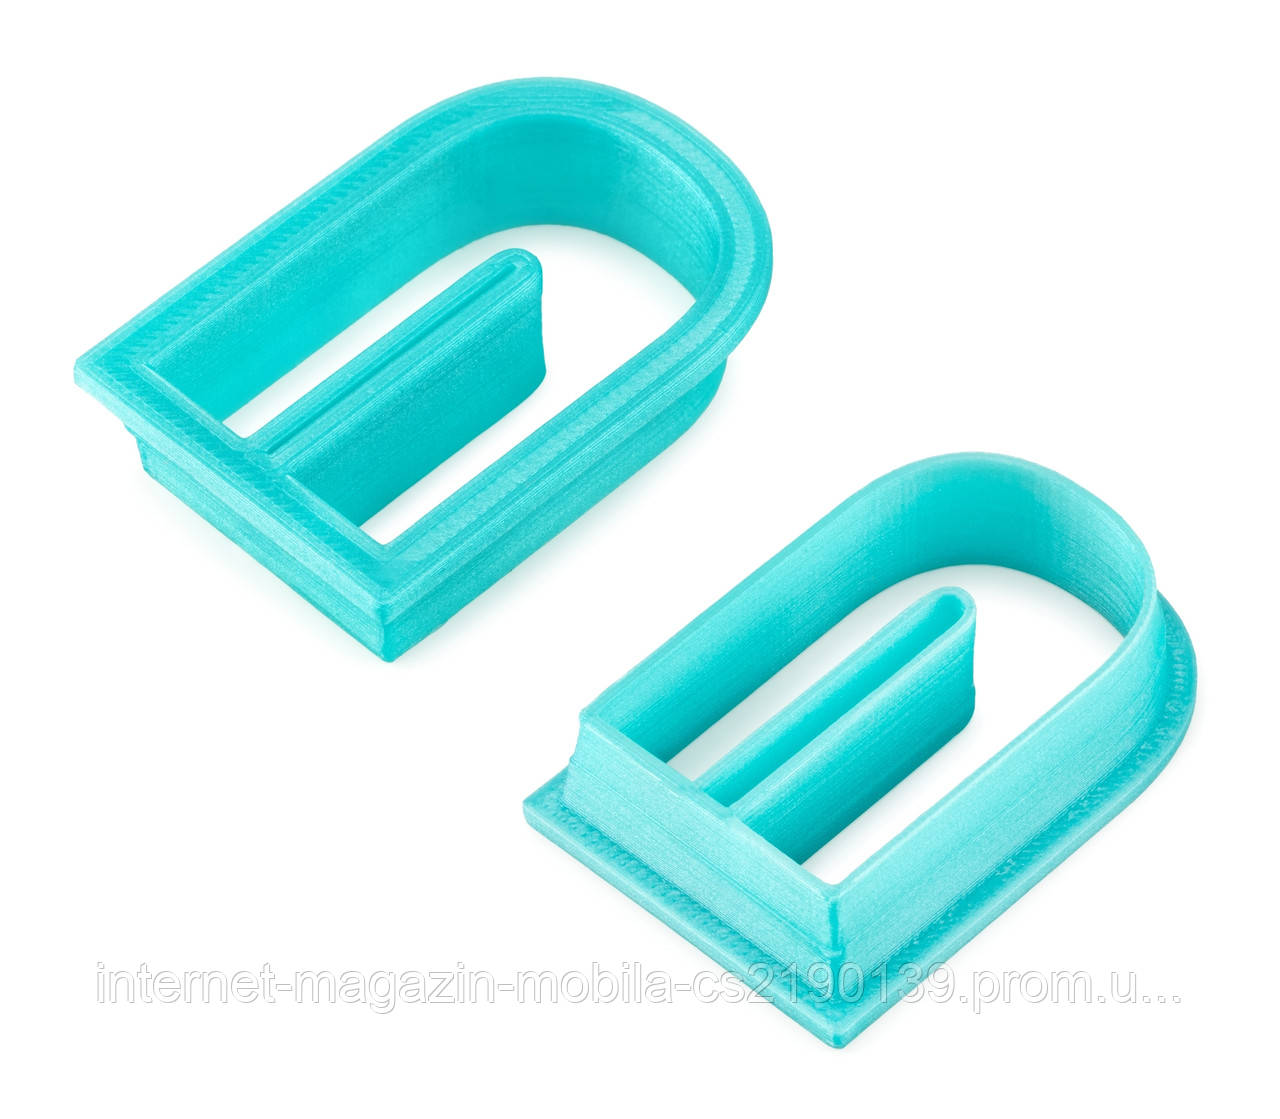 Пластикова форма магнітика для проливання фігур із полімерної глини.